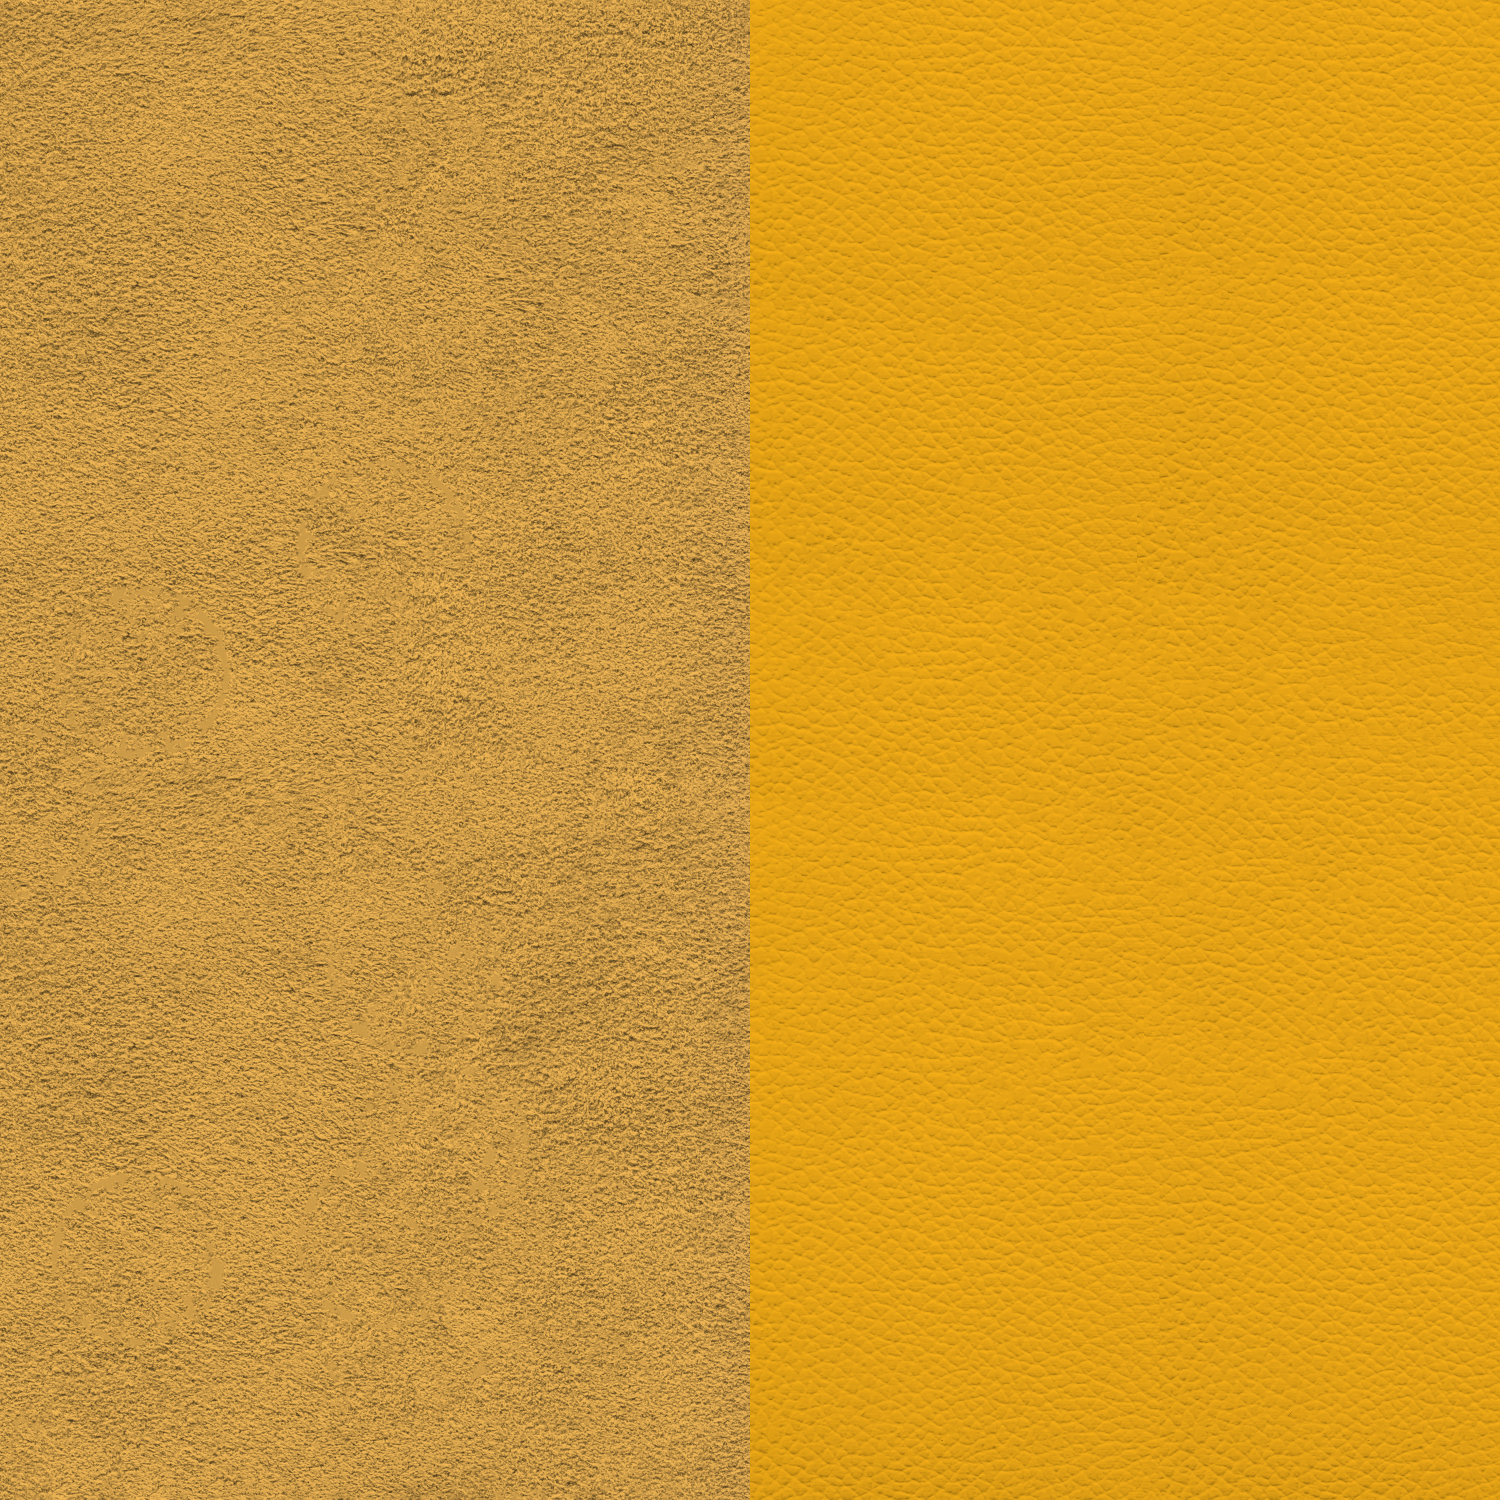 001-amarillo-dupsa-metalino-concentrado-01